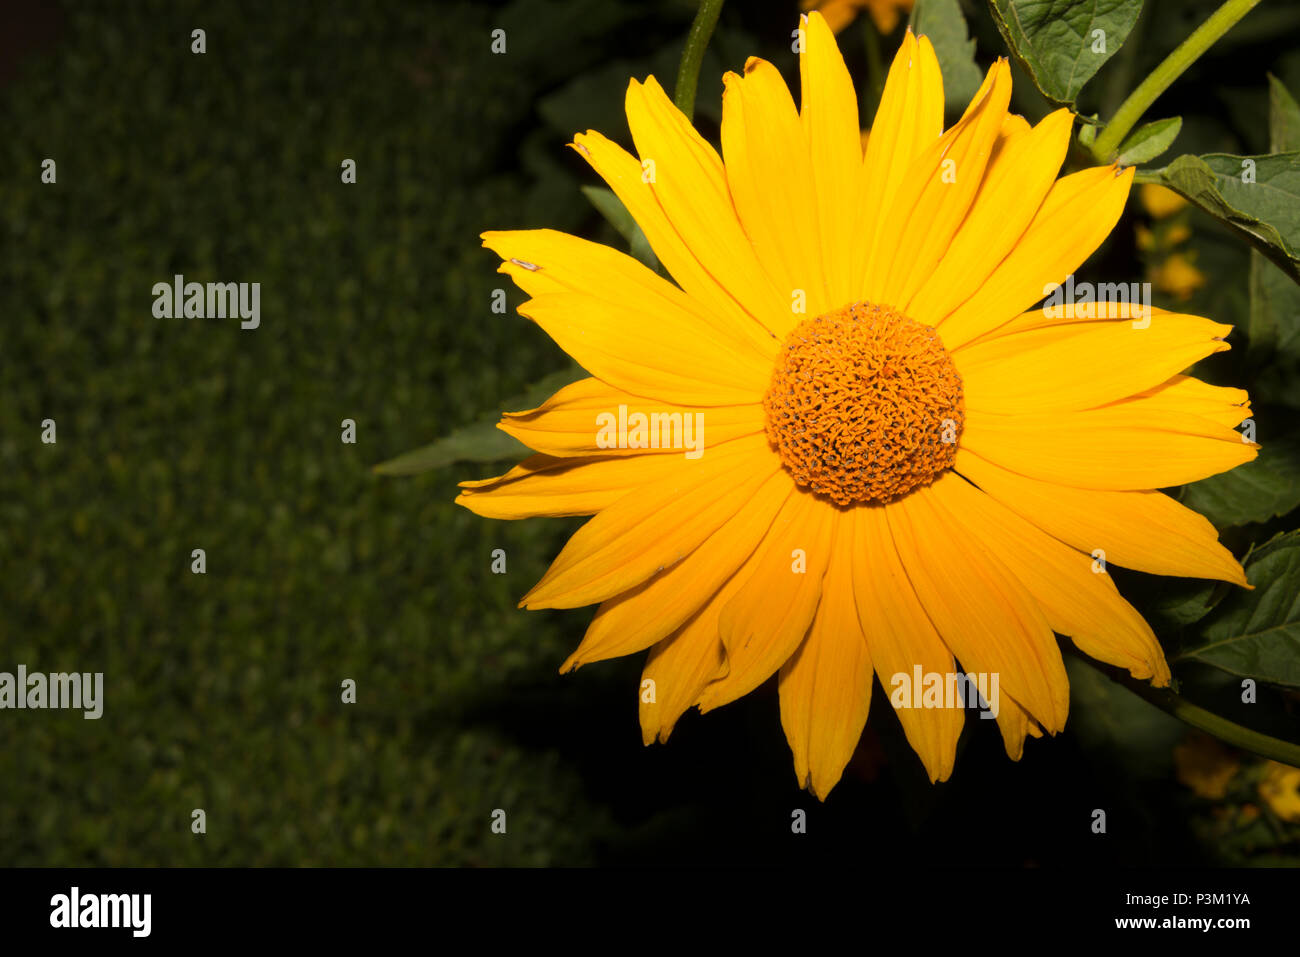 False Sunflower (Heliopsis helianthoides) Stock Photo